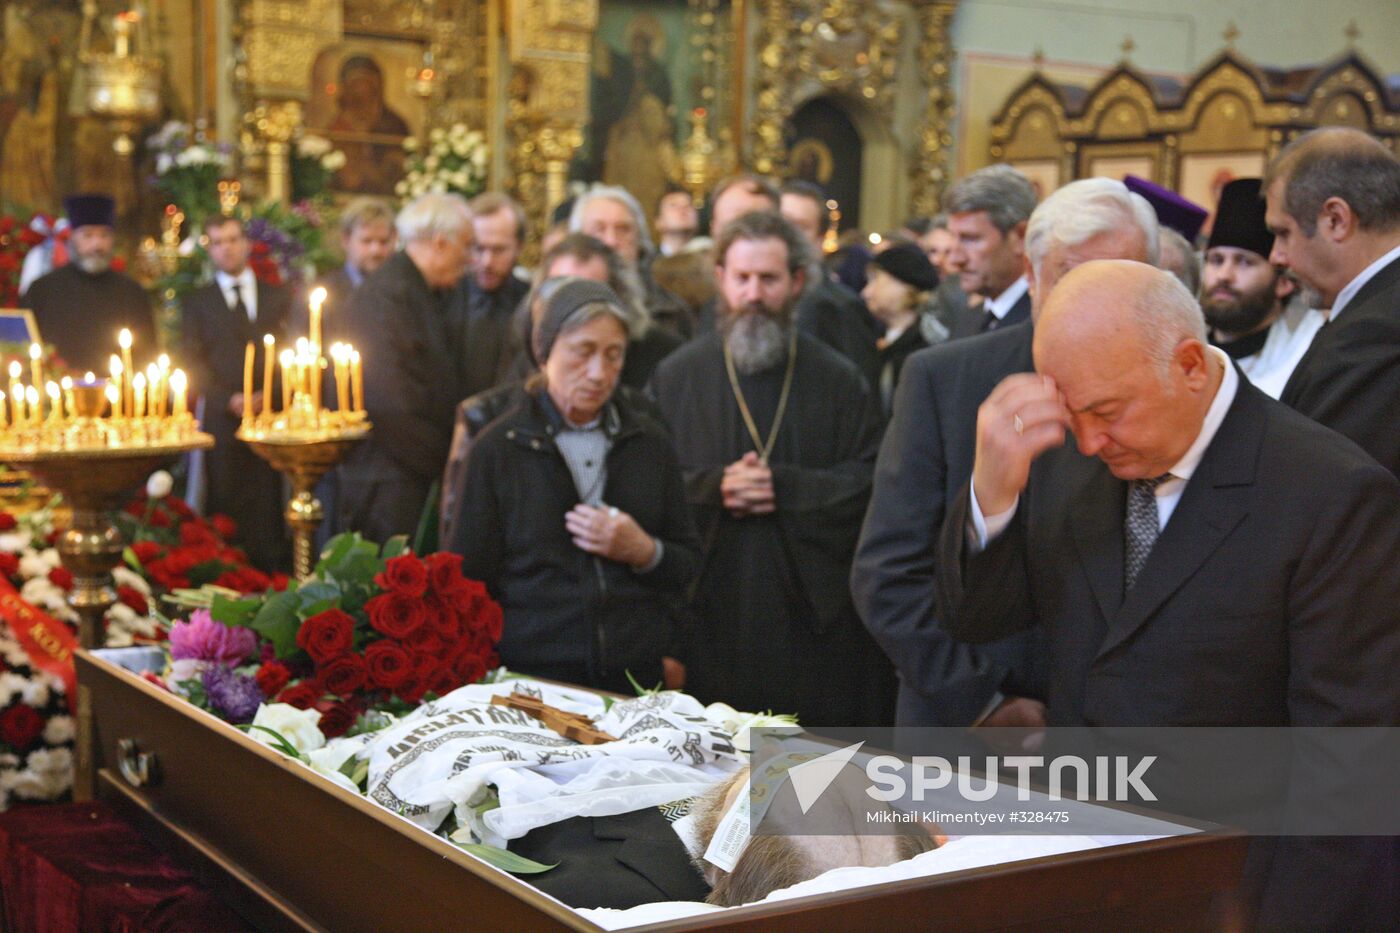 Alexander Solzhenitsyn's funeral